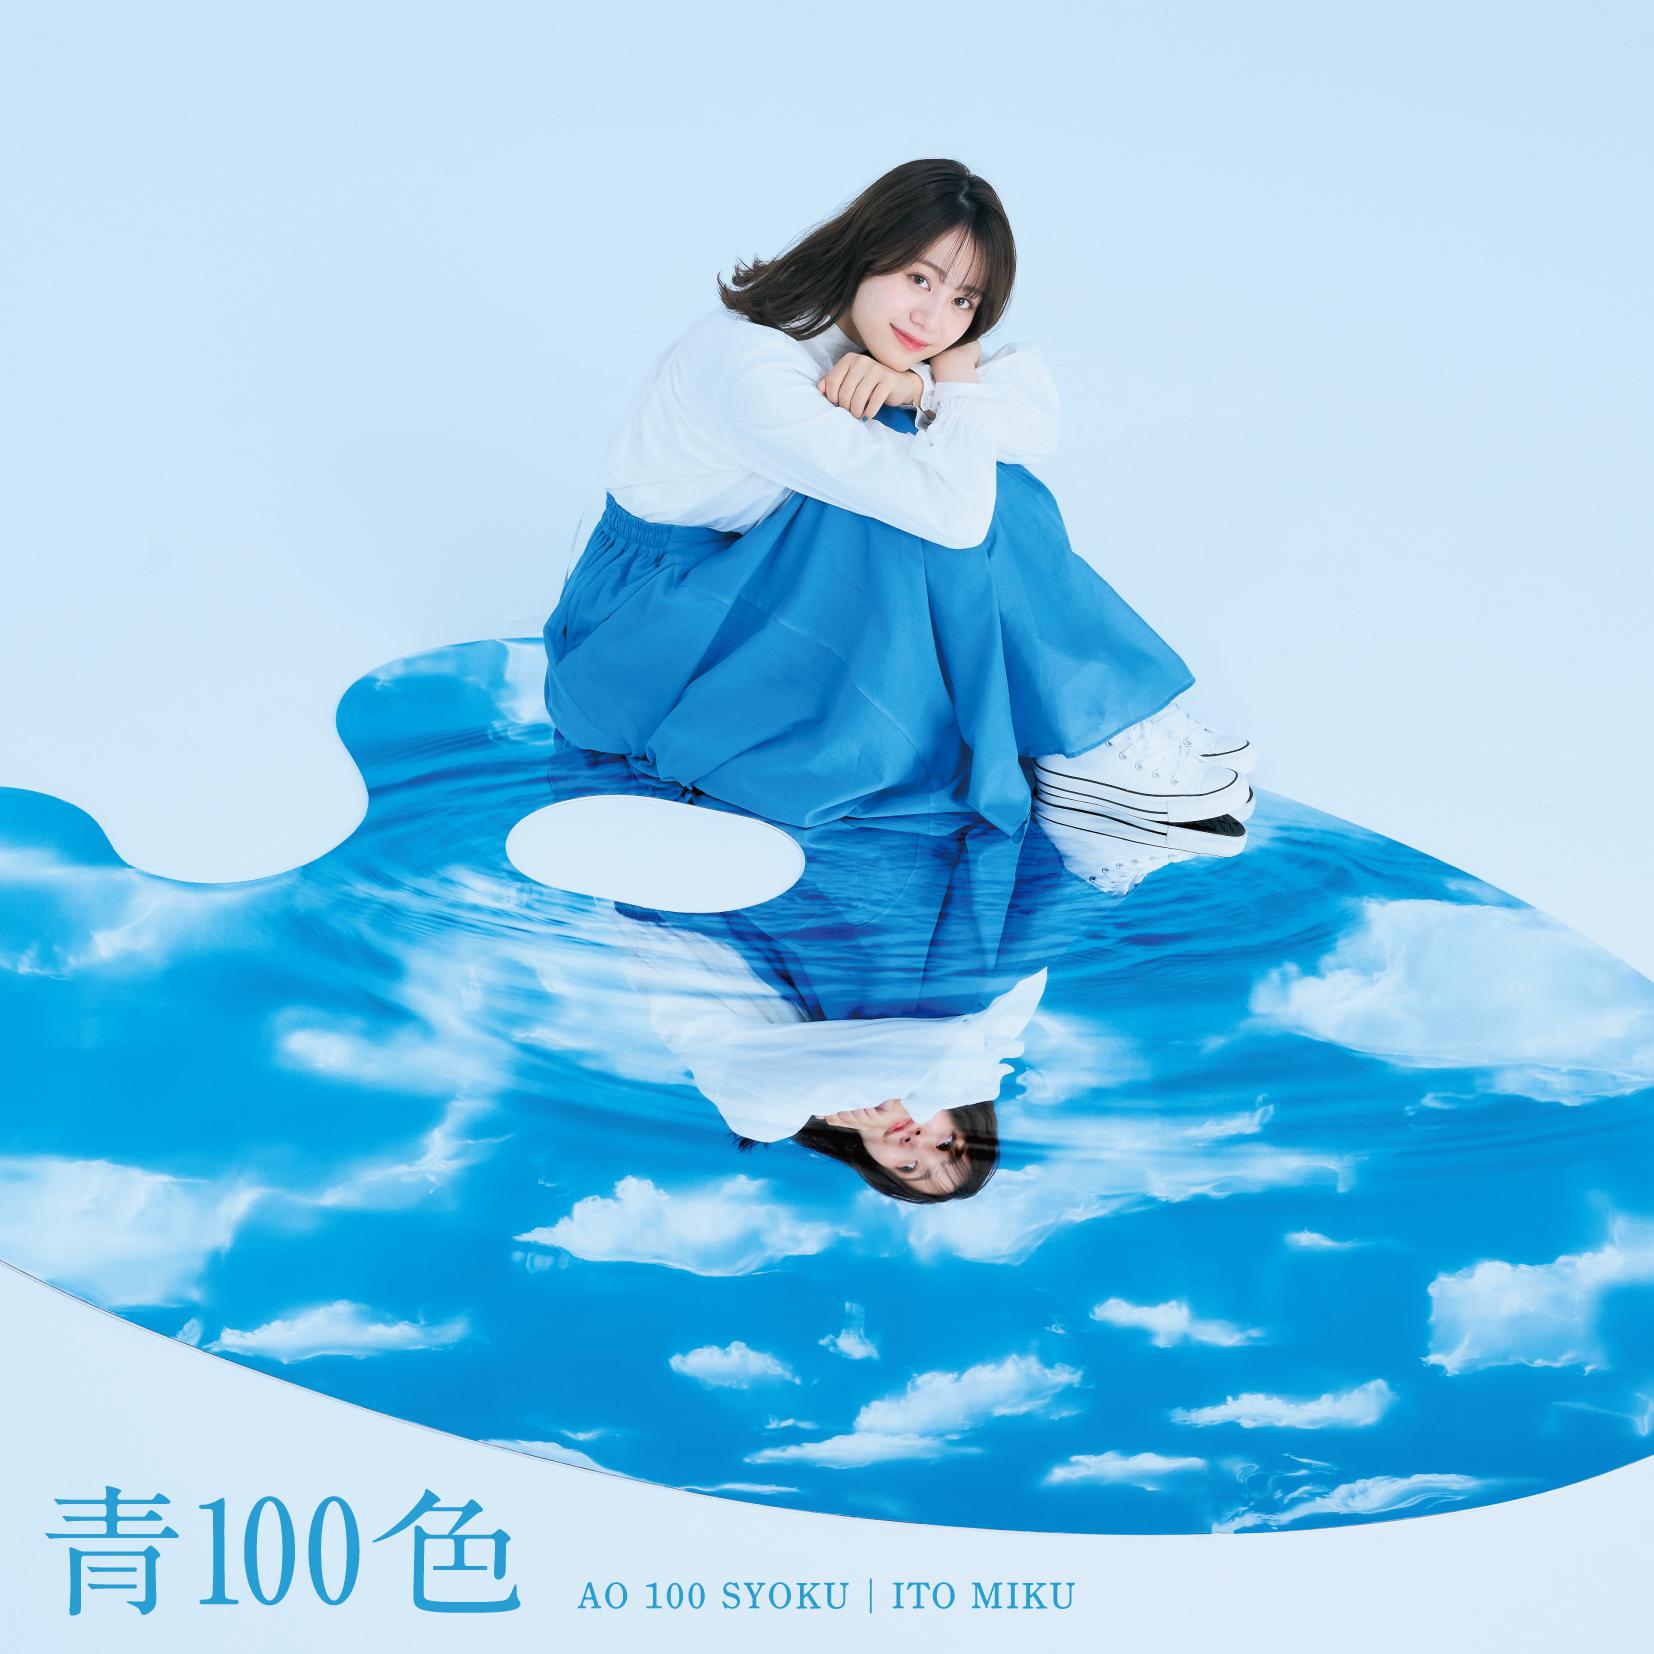 伊藤美来 - 青100色 (off vocal ver.)